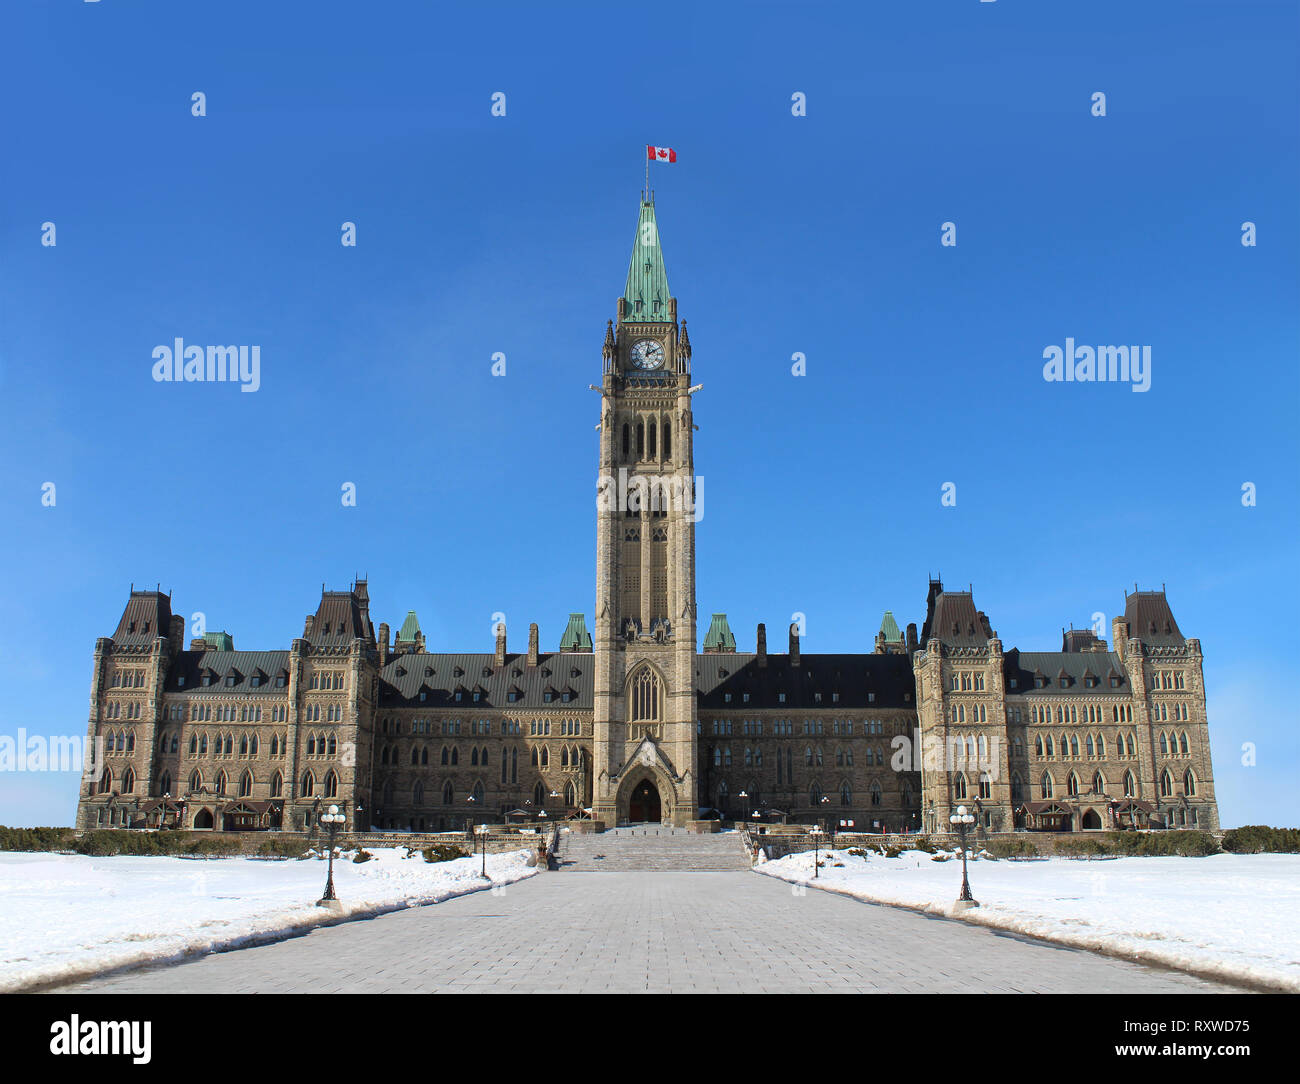 Parlament von Kanada in der kanadischen Hauptstadt Ottawa Ontario als historisches Gebäude mit einer Vorderansicht des Peace Tower. Stockfoto